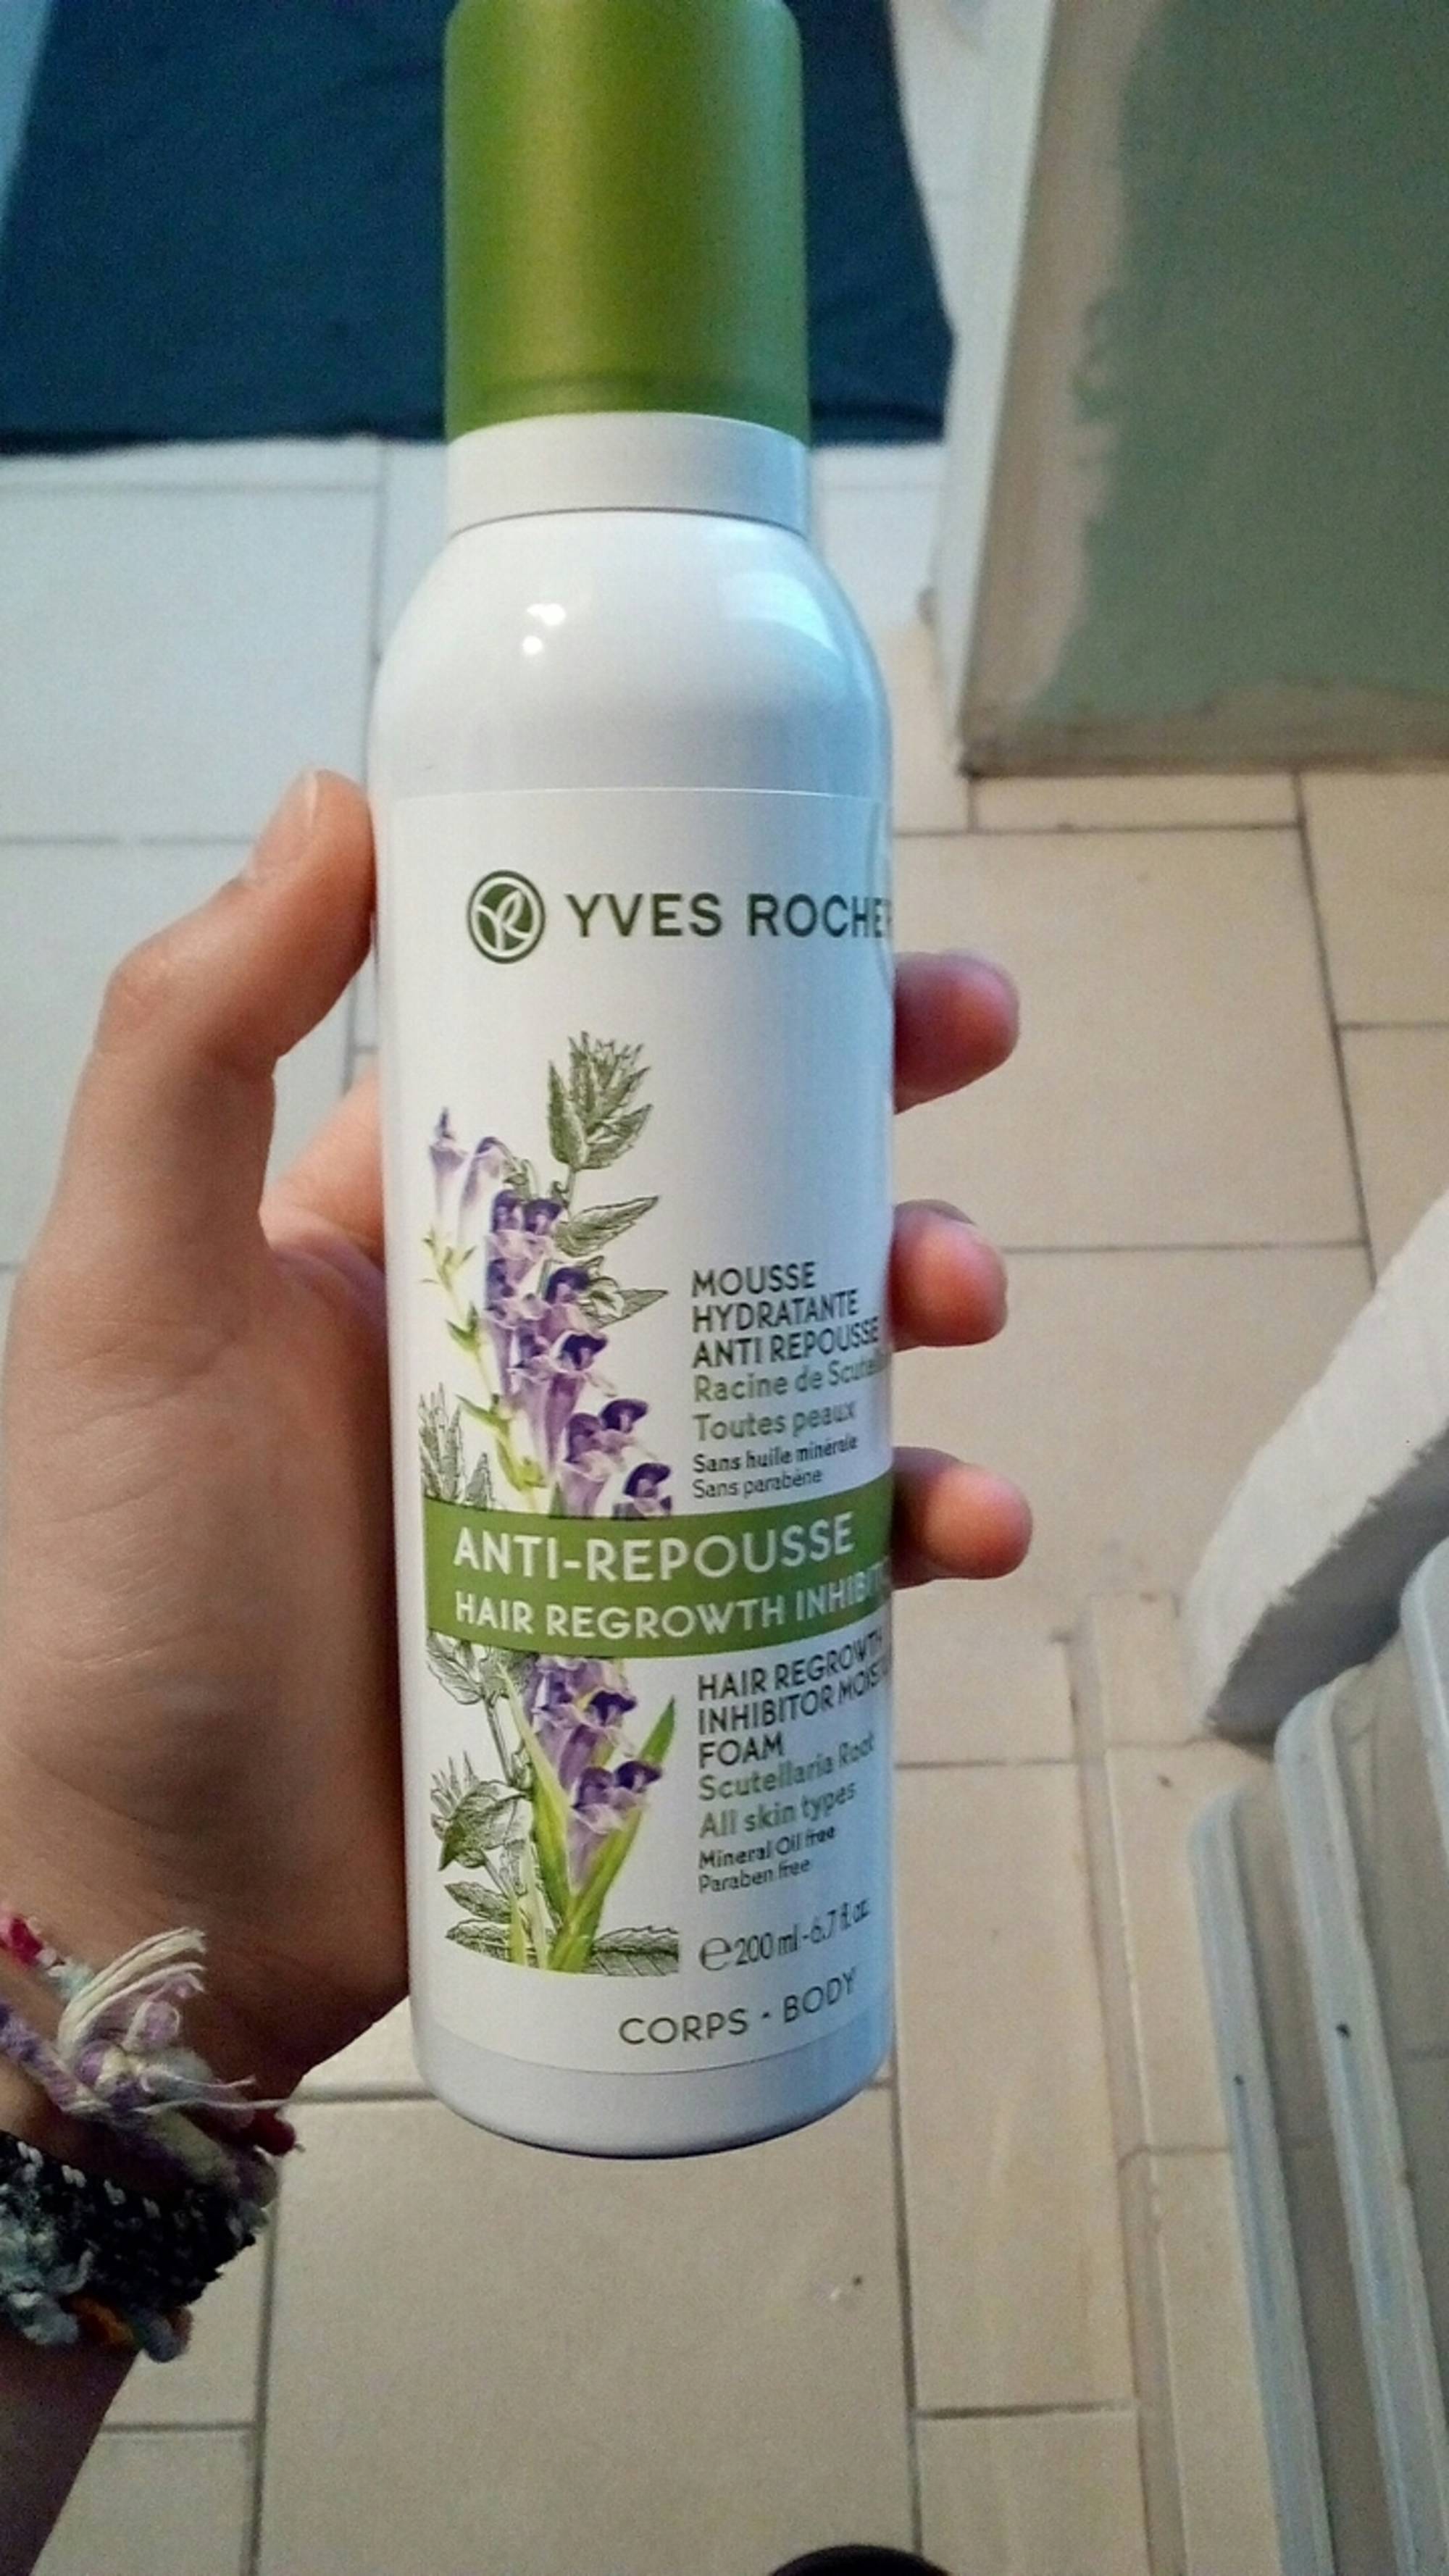 YVES ROCHER - Mousse hydratante anti-repousse pour le corps